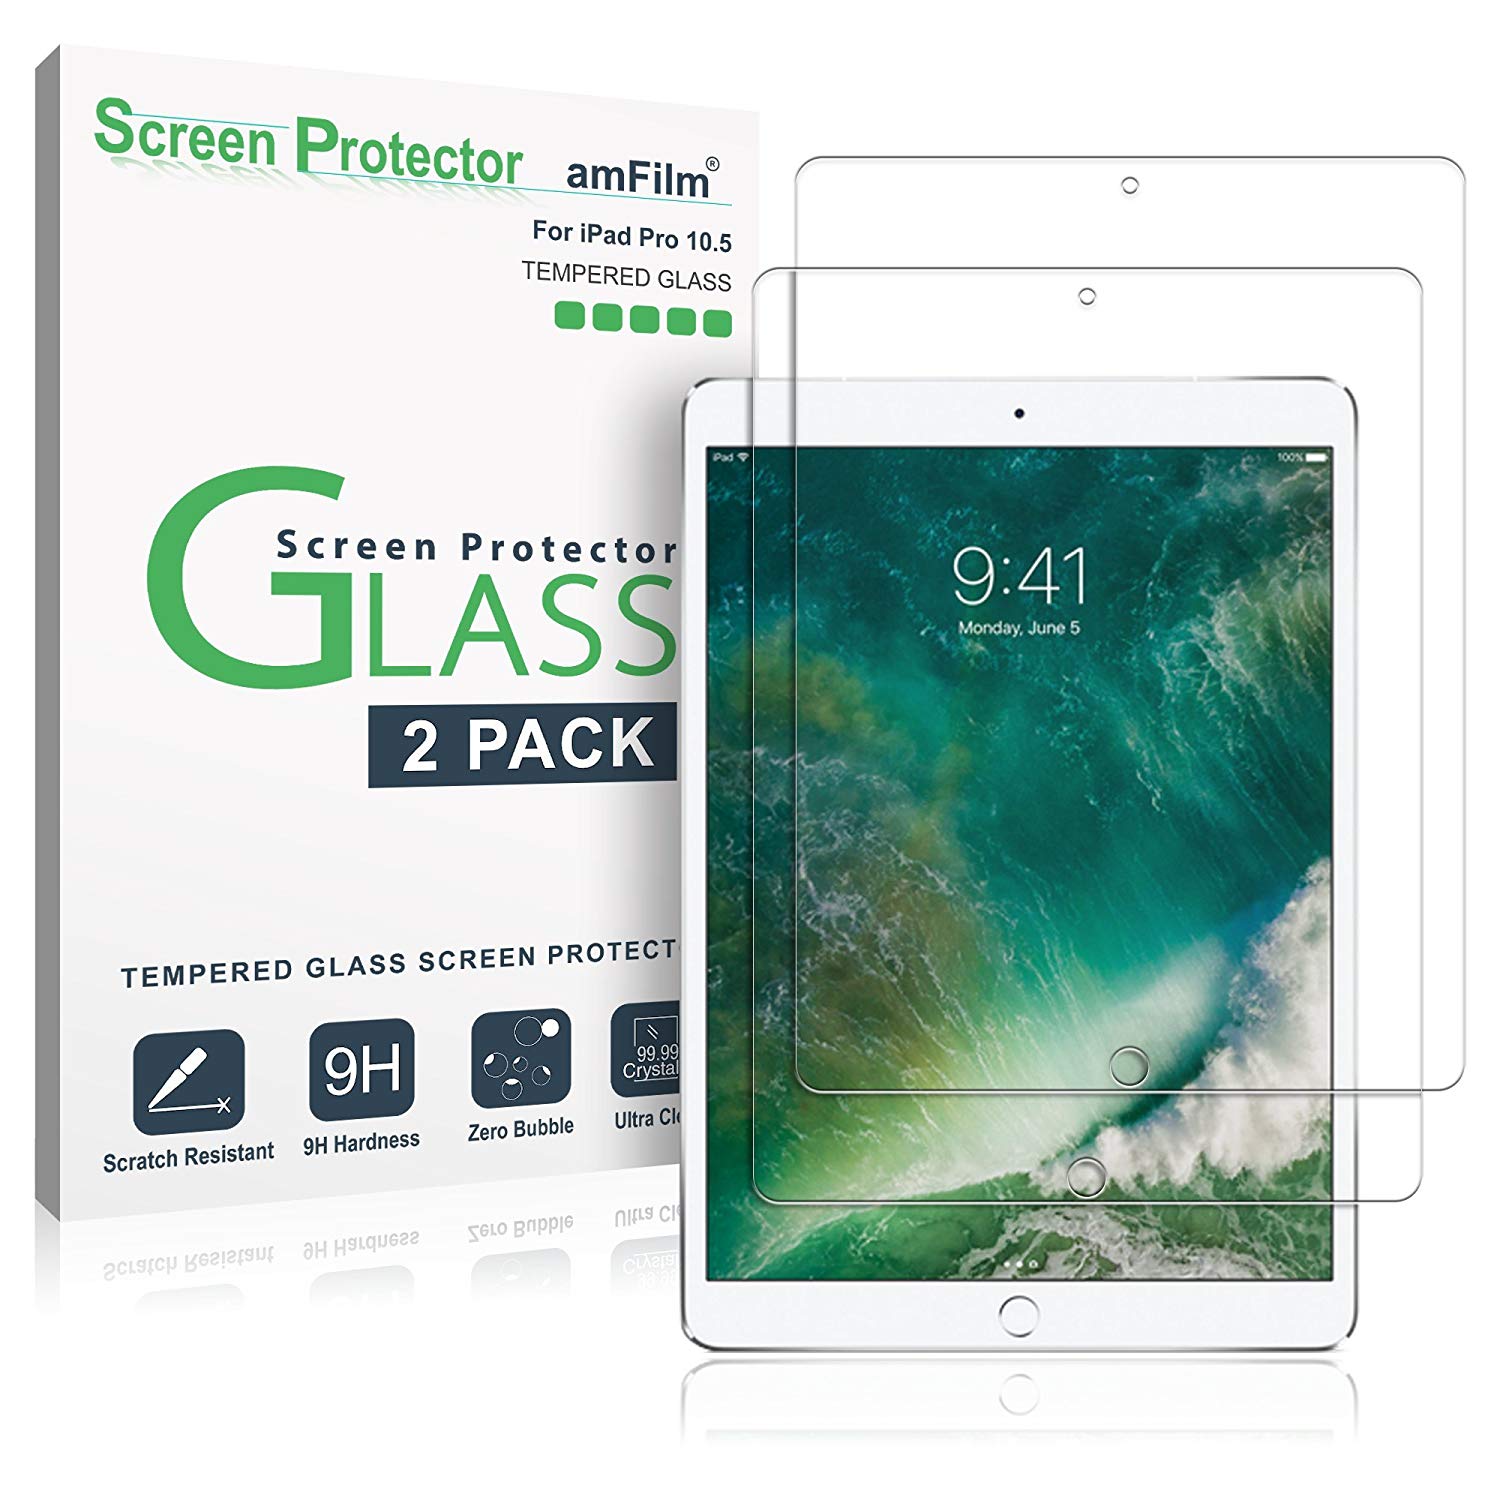 amFilm iPad Air 2019 screen protector